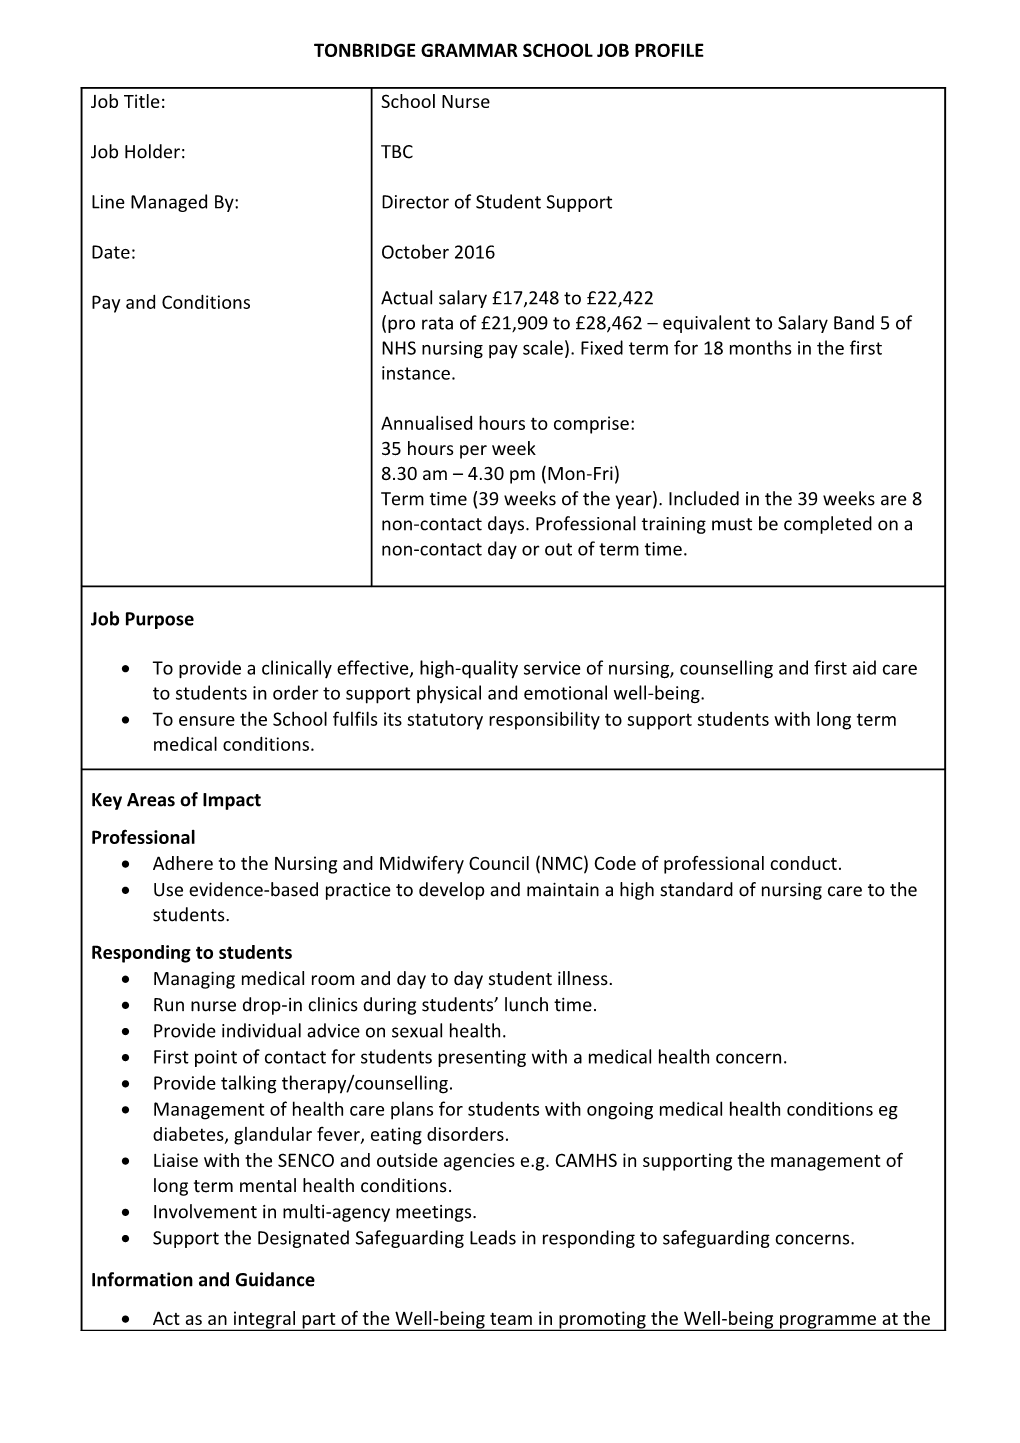 Tonbridge Grammar School Job Description